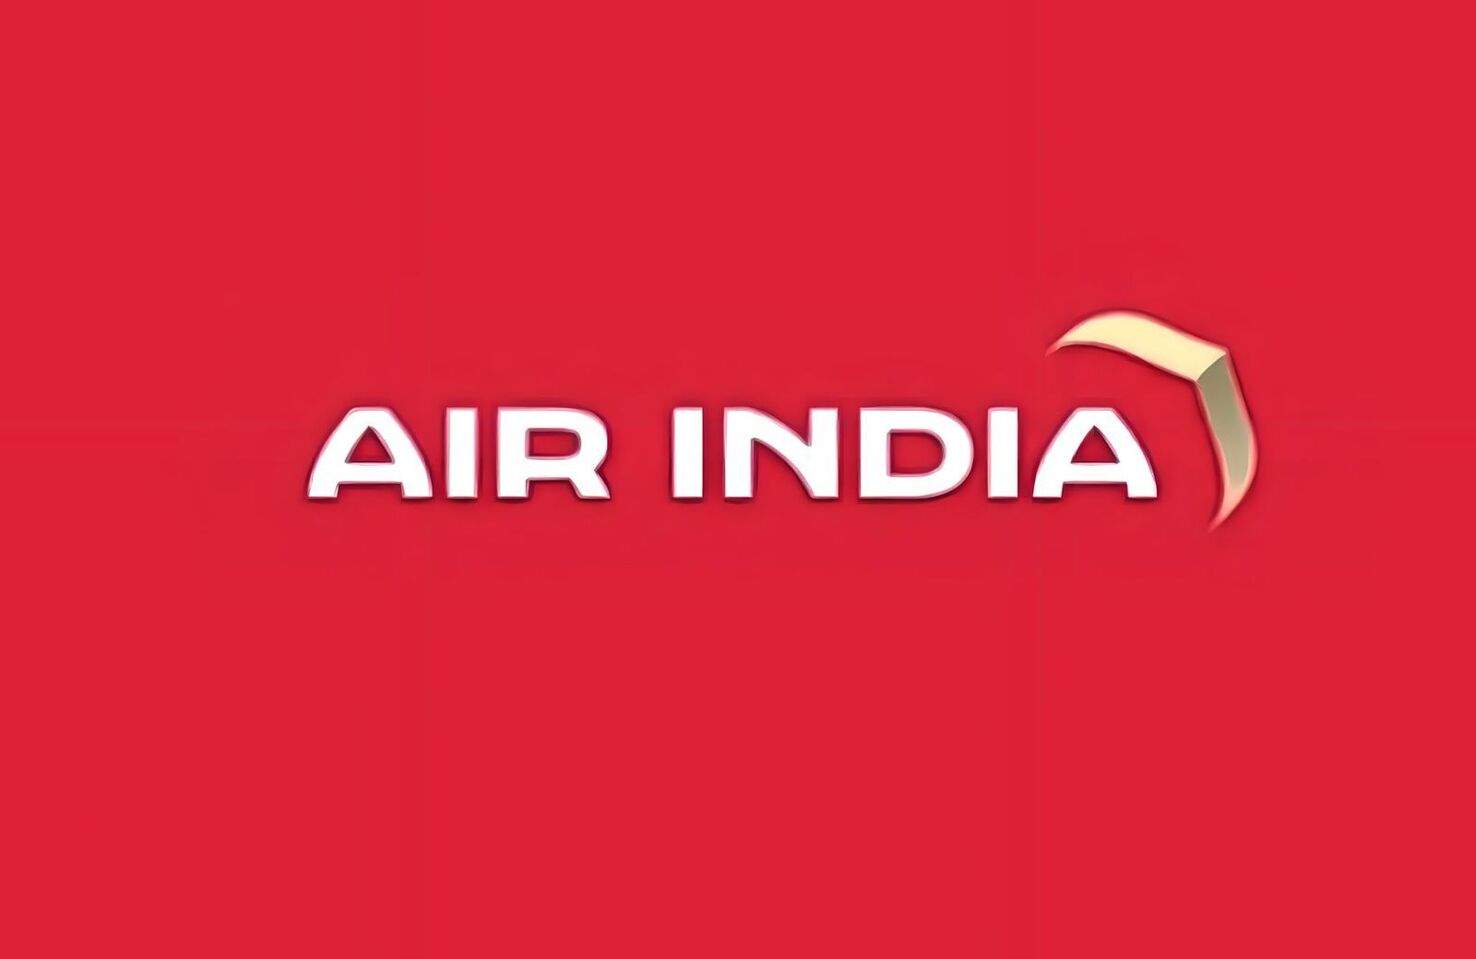 Air India New Logo 0d0dcdb45e6eb89b4dbd7379b0730ab6